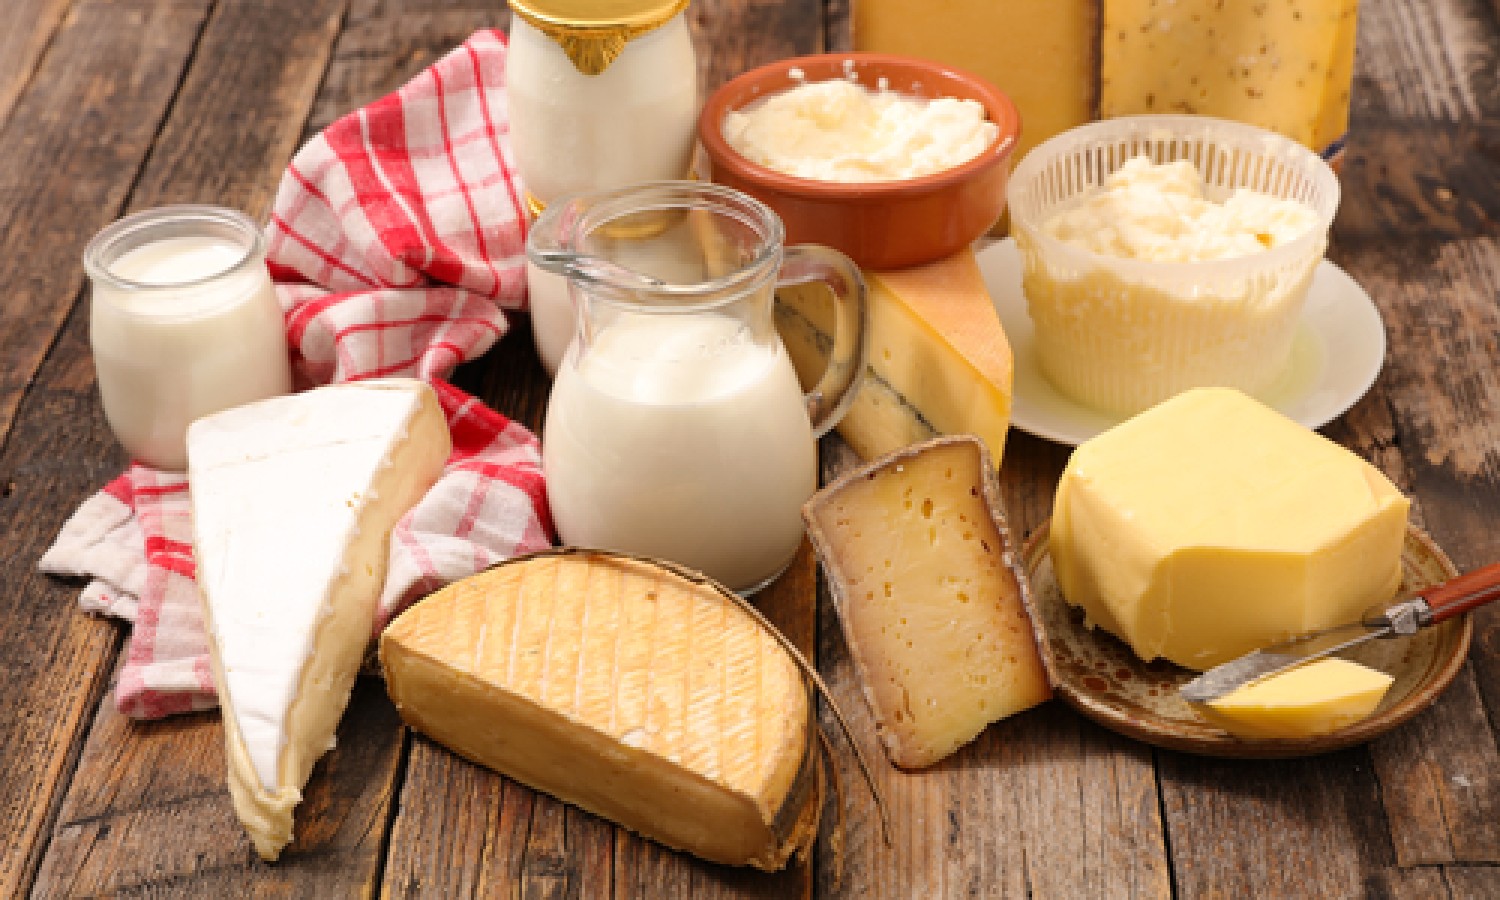 Il caso del latticello e la definizione di formaggio